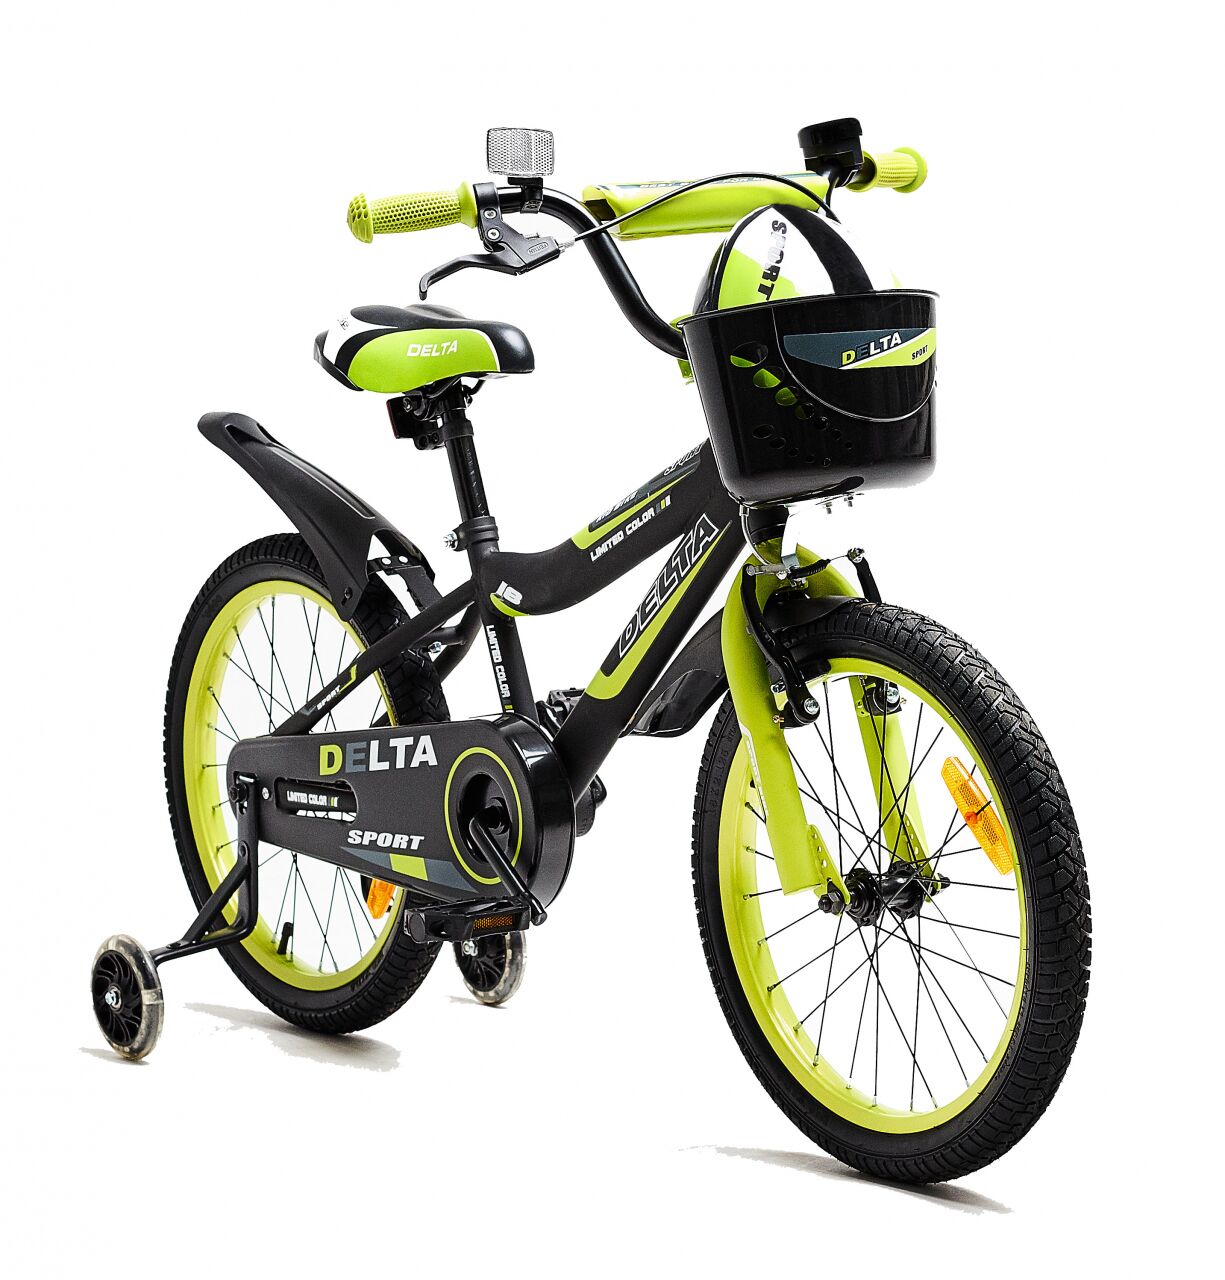 Детский велосипед DELTA Sport 20 (черный/зеленый, 2020)